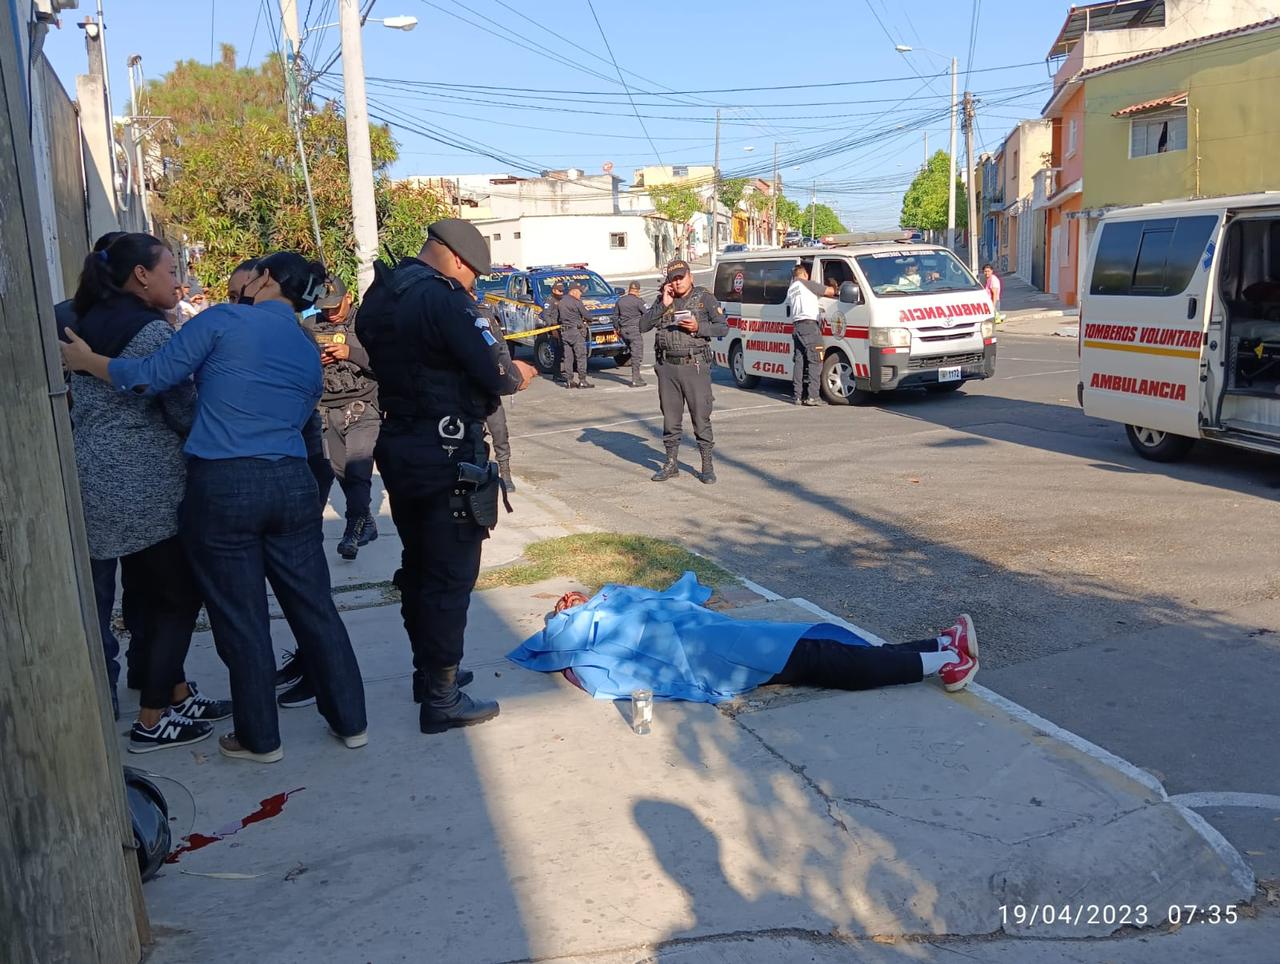 El padre de familia Pedro Roberto Arbona Aguirre de 30 años murió baleado en la 23 avenida y 1a calle zona 6 mientras llevaba a su hijo a la escuela. (Foto Prensa Libre: Bomberos Voluntarios).